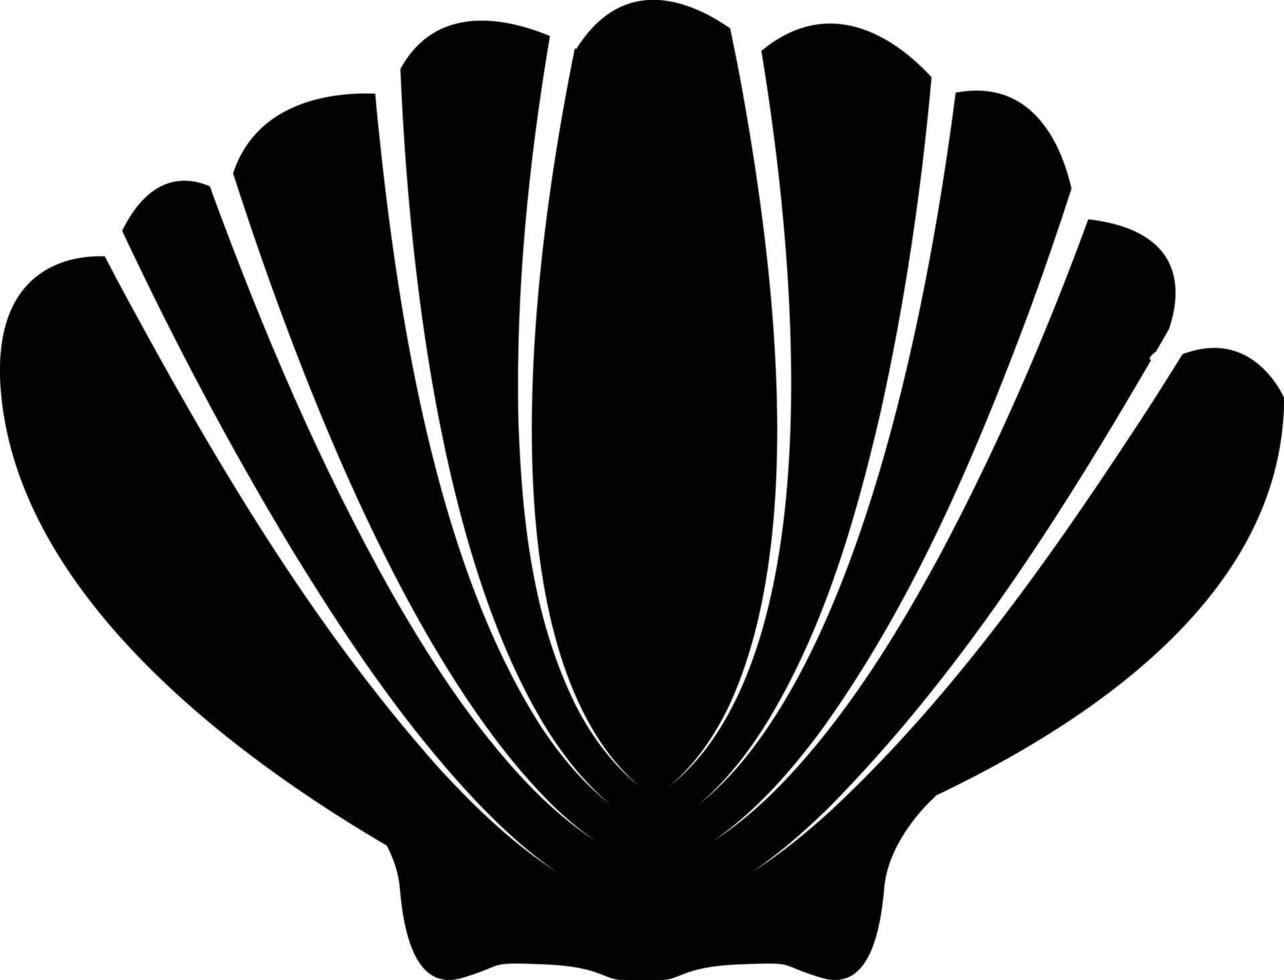 icono de concha sobre fondo blanco. signo marino de mariscos. símbolo del océano de conchas marinas. estilo plano vector